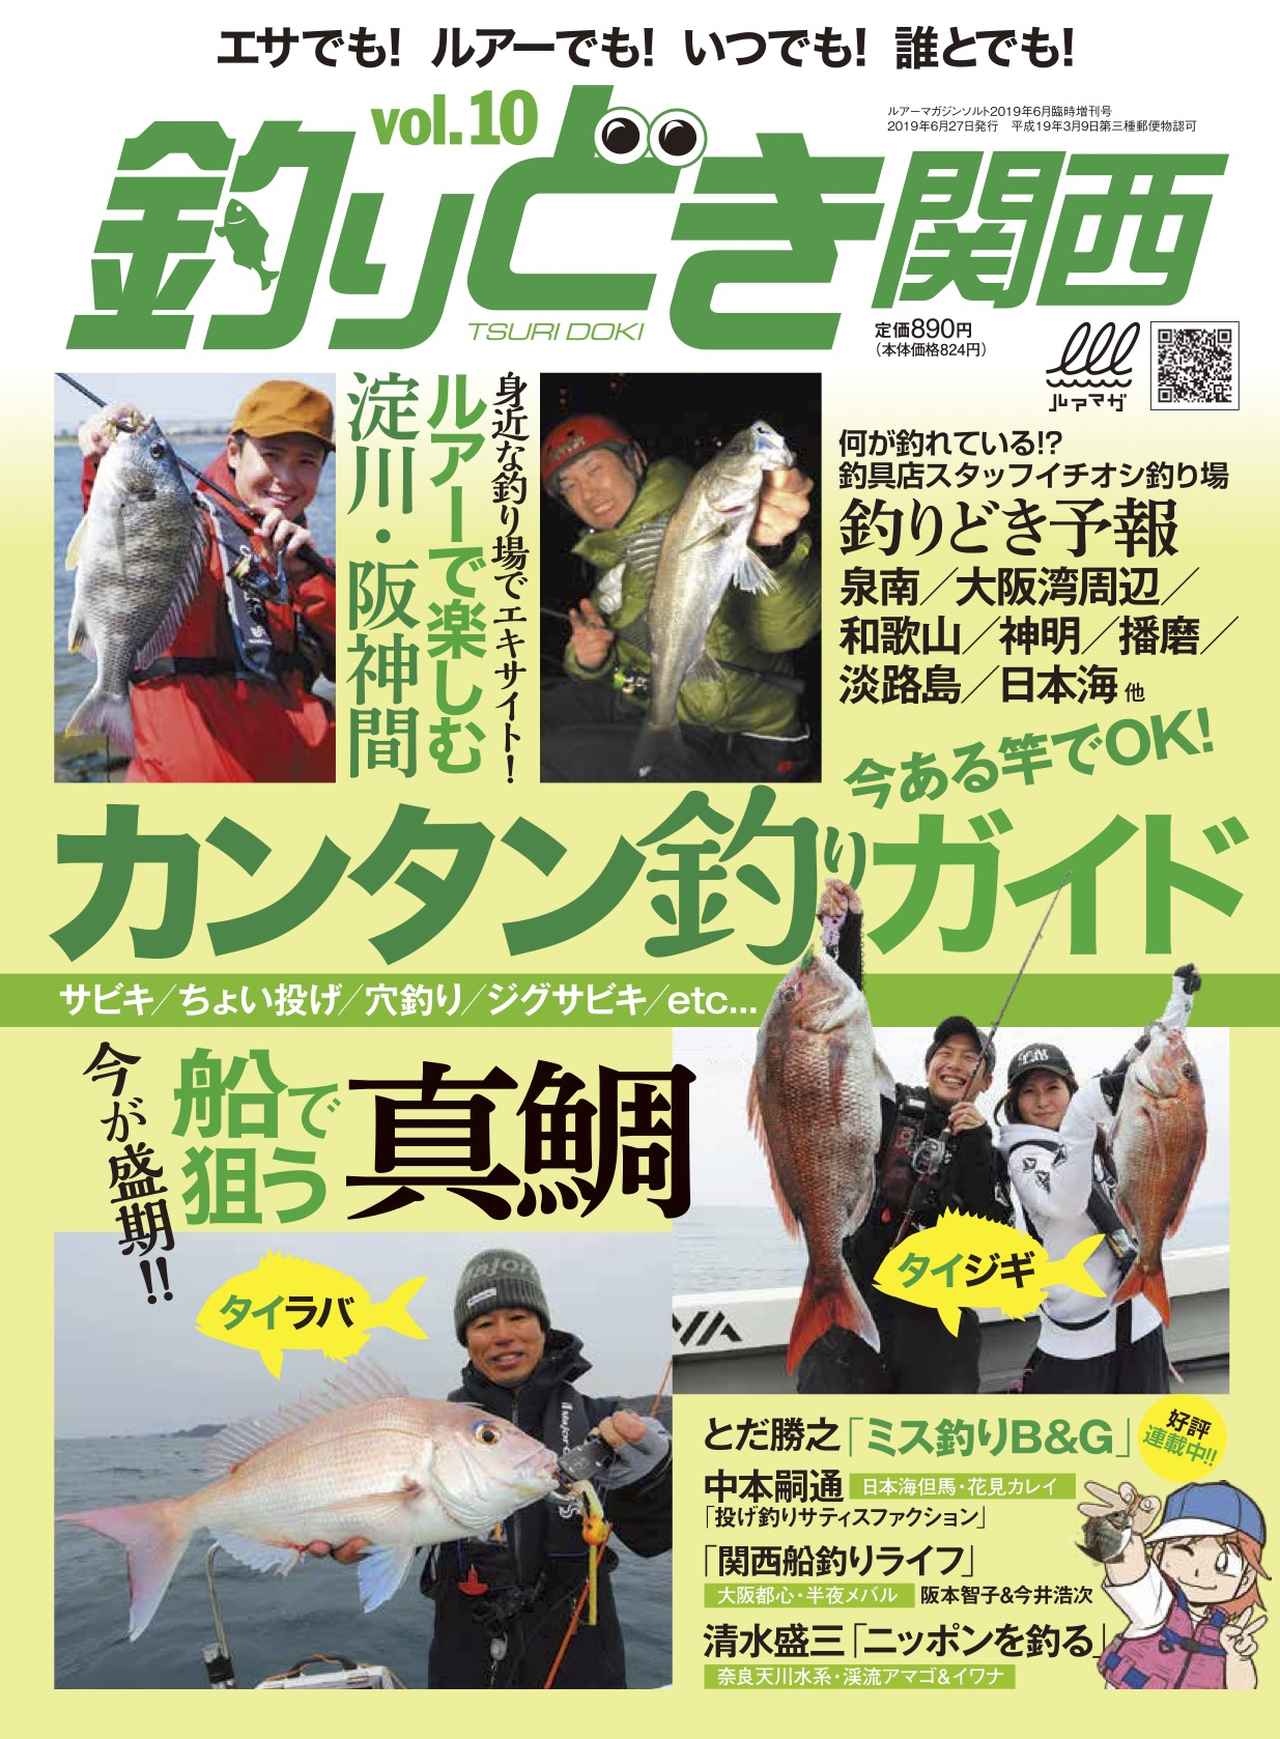 釣りどき関西 Vol 10 発売 今ある竿でok カンタン釣りガイド 船で狙う真鯛特集 ルアマガ